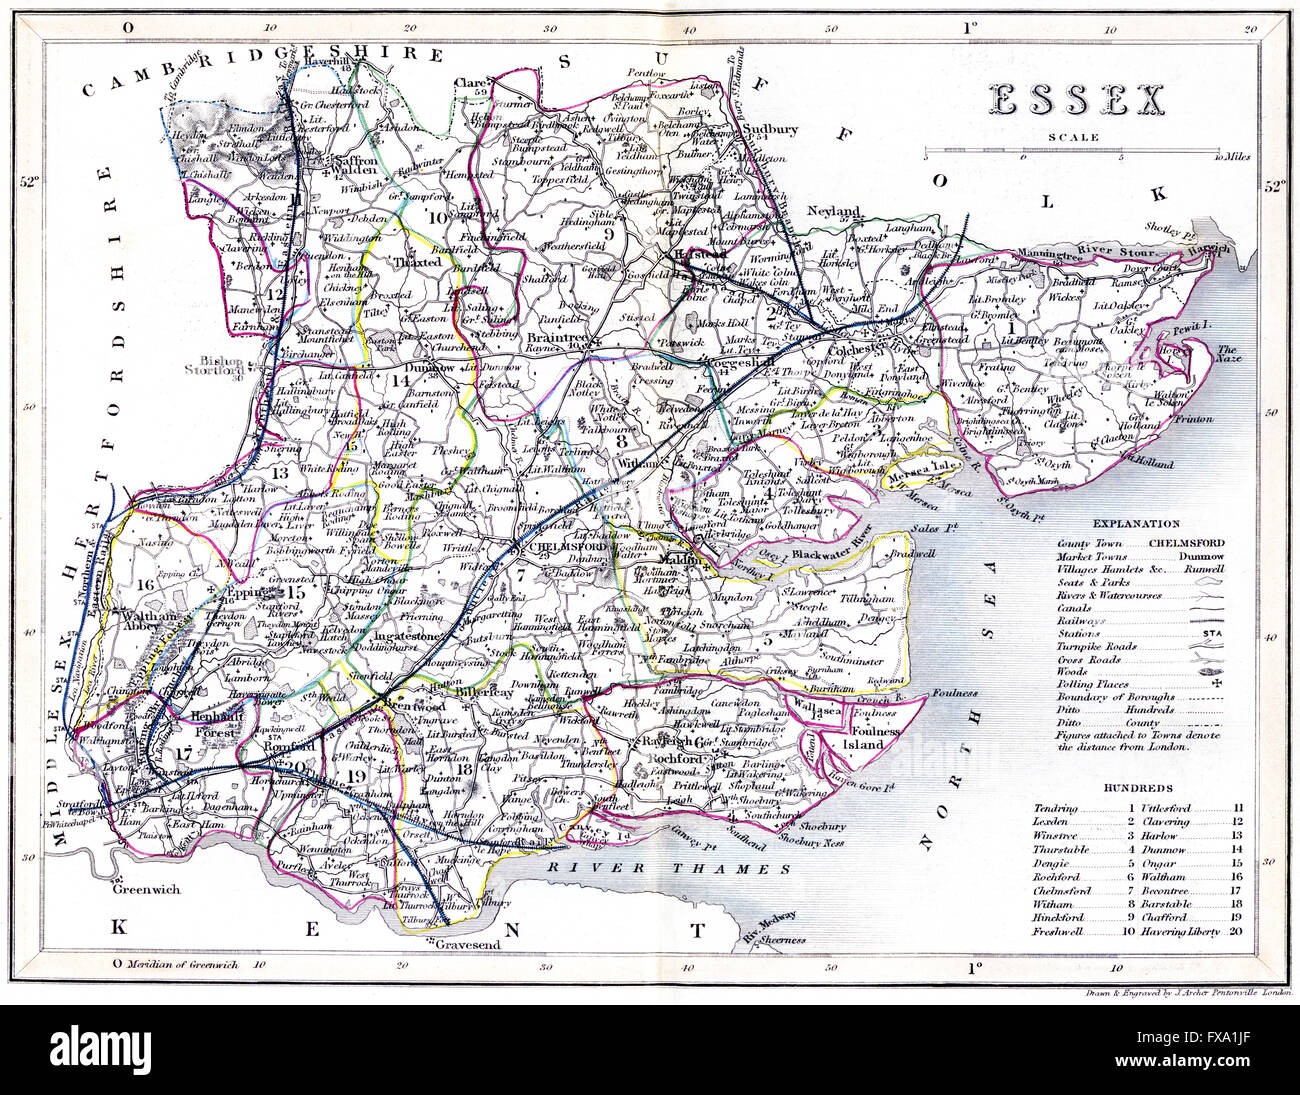 Eine alt kolorierte Karte der Grafschaft Essex, England, wurde mit hoher Auflösung aus einem um 1850 gedruckten Buch gescannt. Für urheberrechtlich frei gehalten. Stockfoto